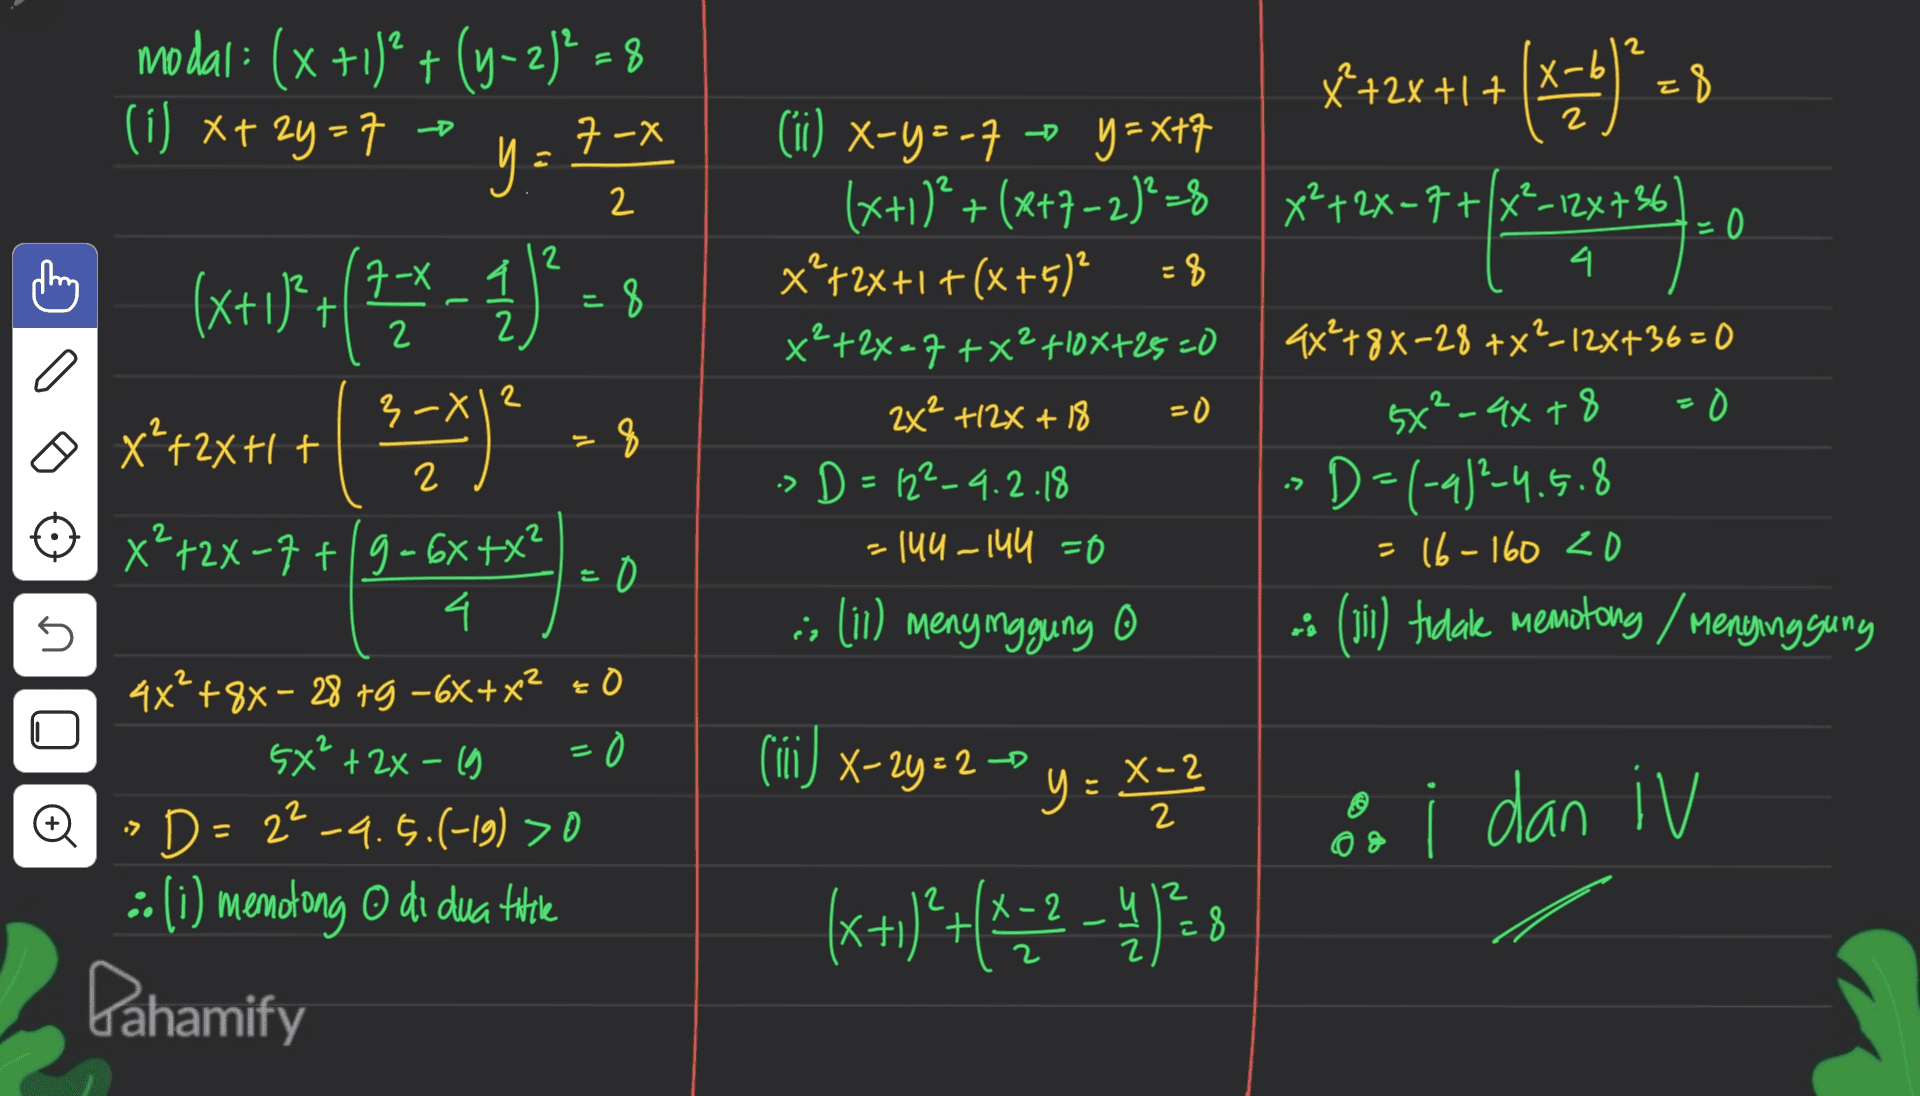 2 modal: (x +1)* + (y-2)" - 8 (i) x+ 2y=7 -b 2 y = 7 - - 1 7 x+2x+1 +(44)*8 ) --), 0 2 40 2 7- 2 1 2 2 (ii) x-y=-7 -- y = x+7 (x+1)²+(x+7-2)²=8 x 72X+1 + (x+5) x²+2x–7 +x2410X+25-0 2X² +12X + 18 > D=122_4.2.18 = 144-144 =0 ;; (ii) meny nggung O 2 3-x12 B (x+1)*(**_ 1)*-8 + 1/ 2x+1+( mens ༡ - 0 x²+2x=7+/x²_124736 4. 9x²+88-28 +X²-12x+36=0 5x²-4x+8 =0 D=(-4)?–4.5.8 = 16-160 zo 3 (11) tidak memotong / Menyinggung 2 > 5 o + x²+2x+1+ q x²+2x-7+19=6X+X² 4. 4x'+8x – 28 +9 -6x + x² = 0 5x² + 2x - 19 = D=2²-9.5.(-19) >0 : (i) memotong o di dua title Pahamify (iii) x-2y = 2-0 y = X-2 (= X-2 2 > o i dan iv 08 2 X (x+1)+(+-2 - 4 1 28 (? +4472 Ć Z 